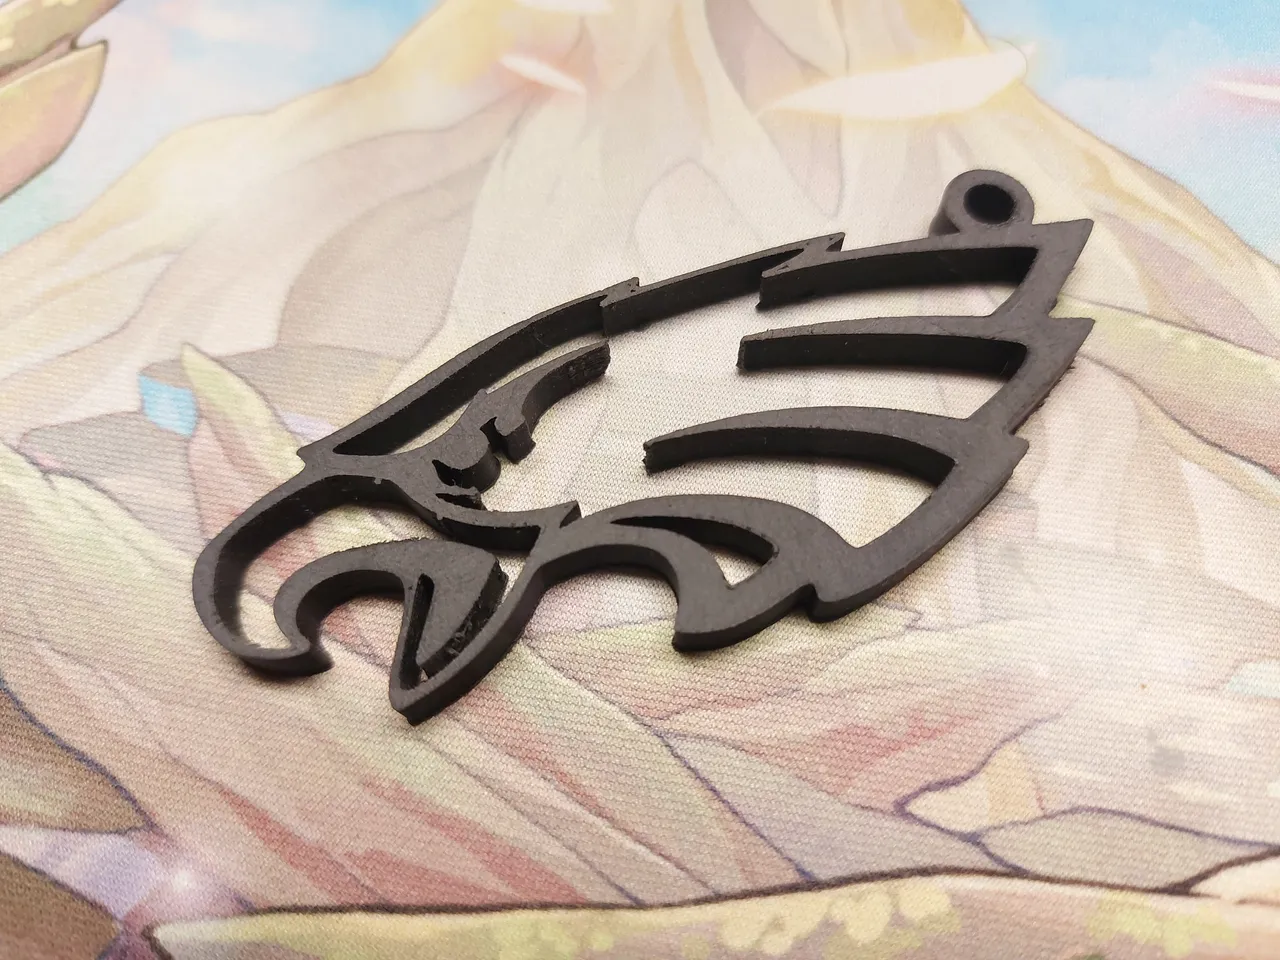 Simplified silhouette/line art Philadelphia Eagles keychain by Vette_Boi22, Download free STL model